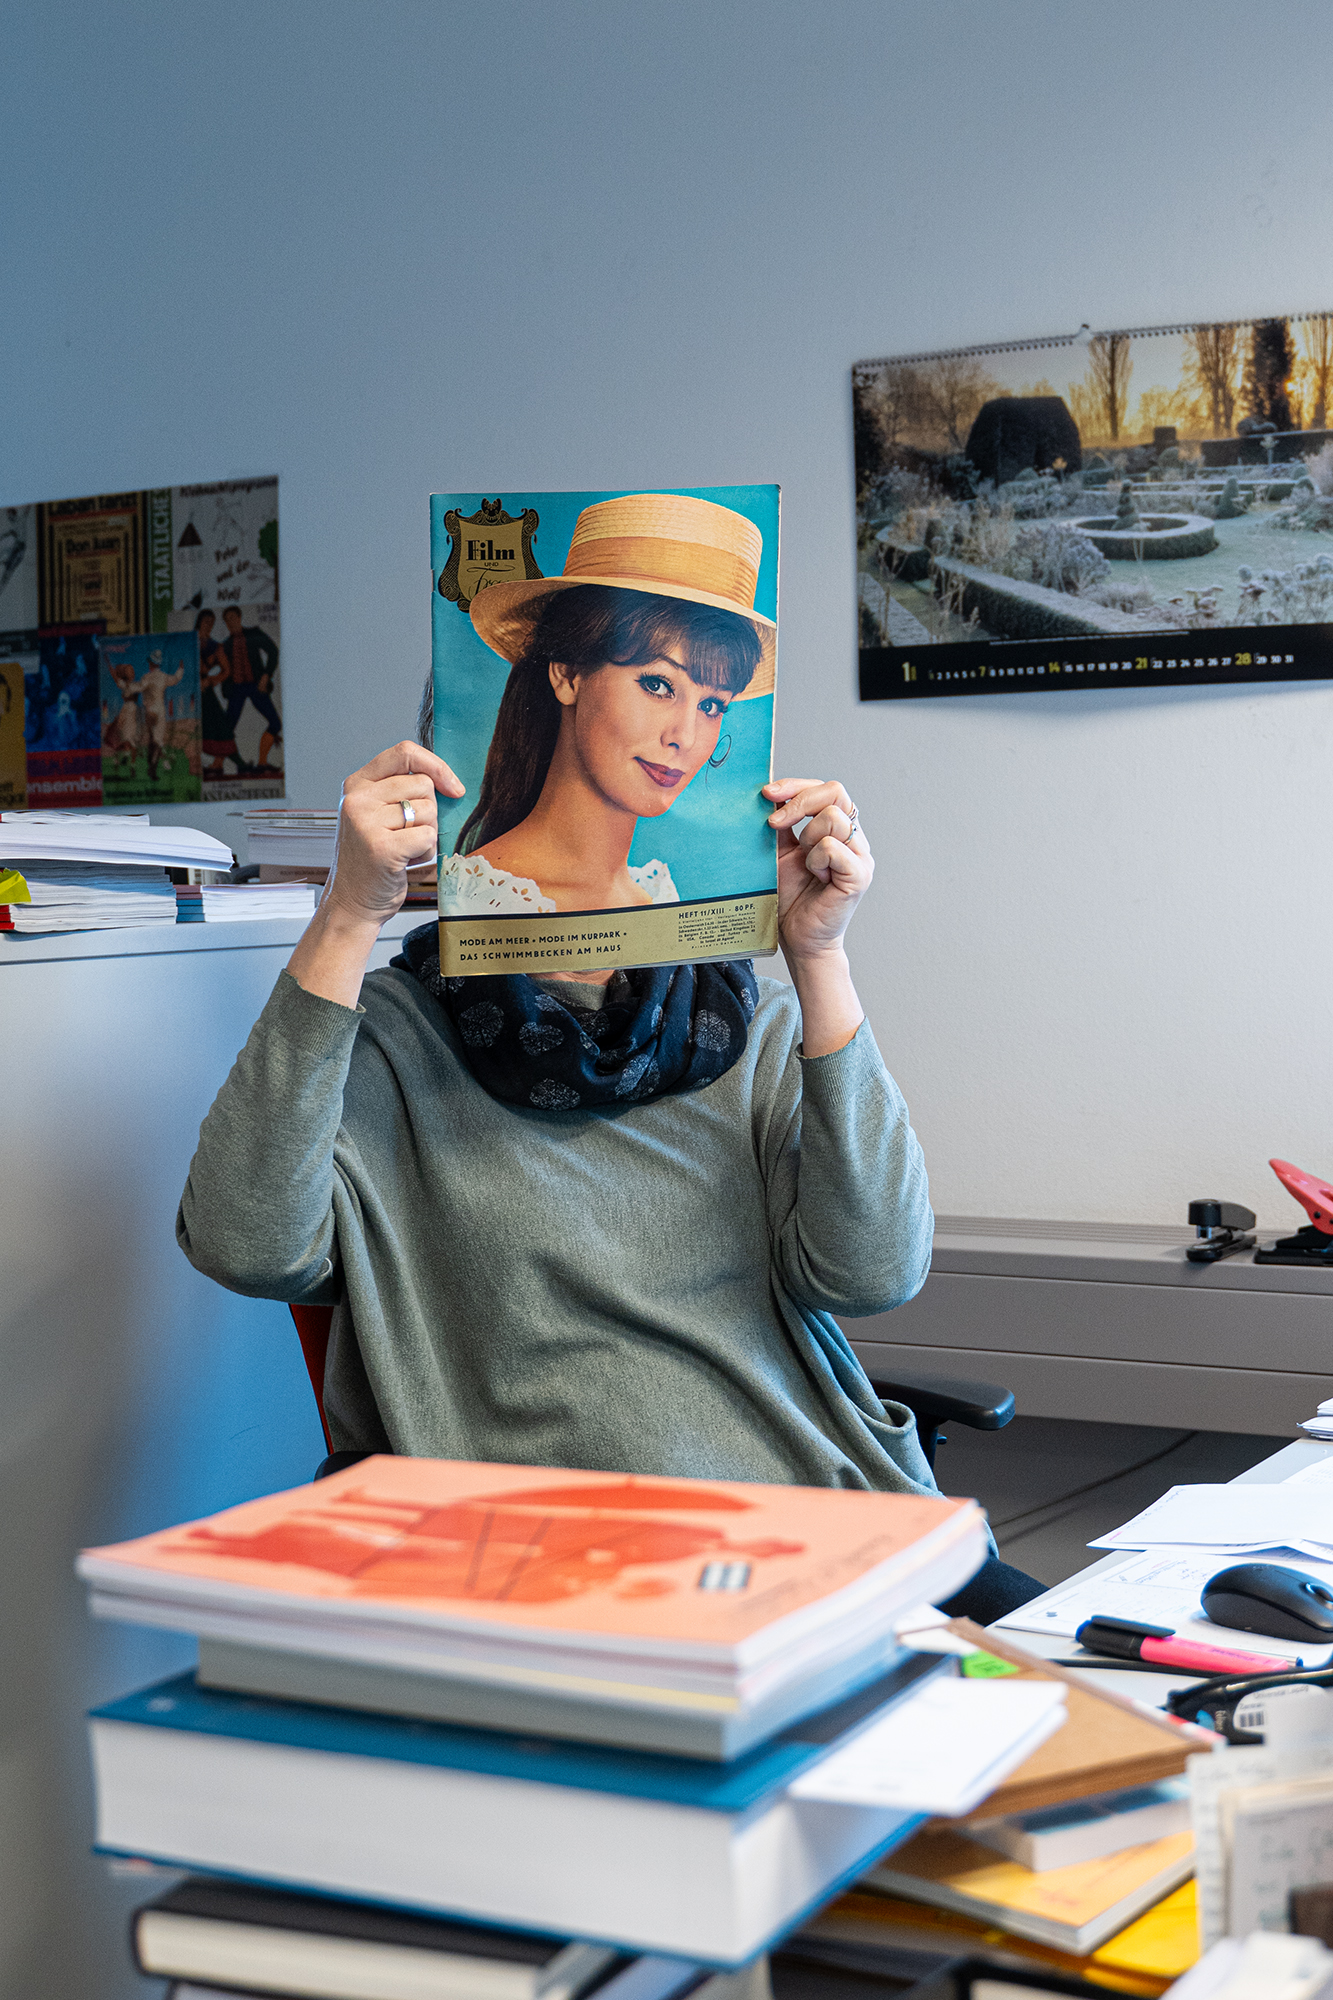 In einem Büro hält sich eine Person eine Ausgabe der Zeitschrift "Film und Frau" vor das Gesicht. Es sieht aus, als wäre der Kopf der Frau auf dem Magazincover der Kopf der Person im Büro.